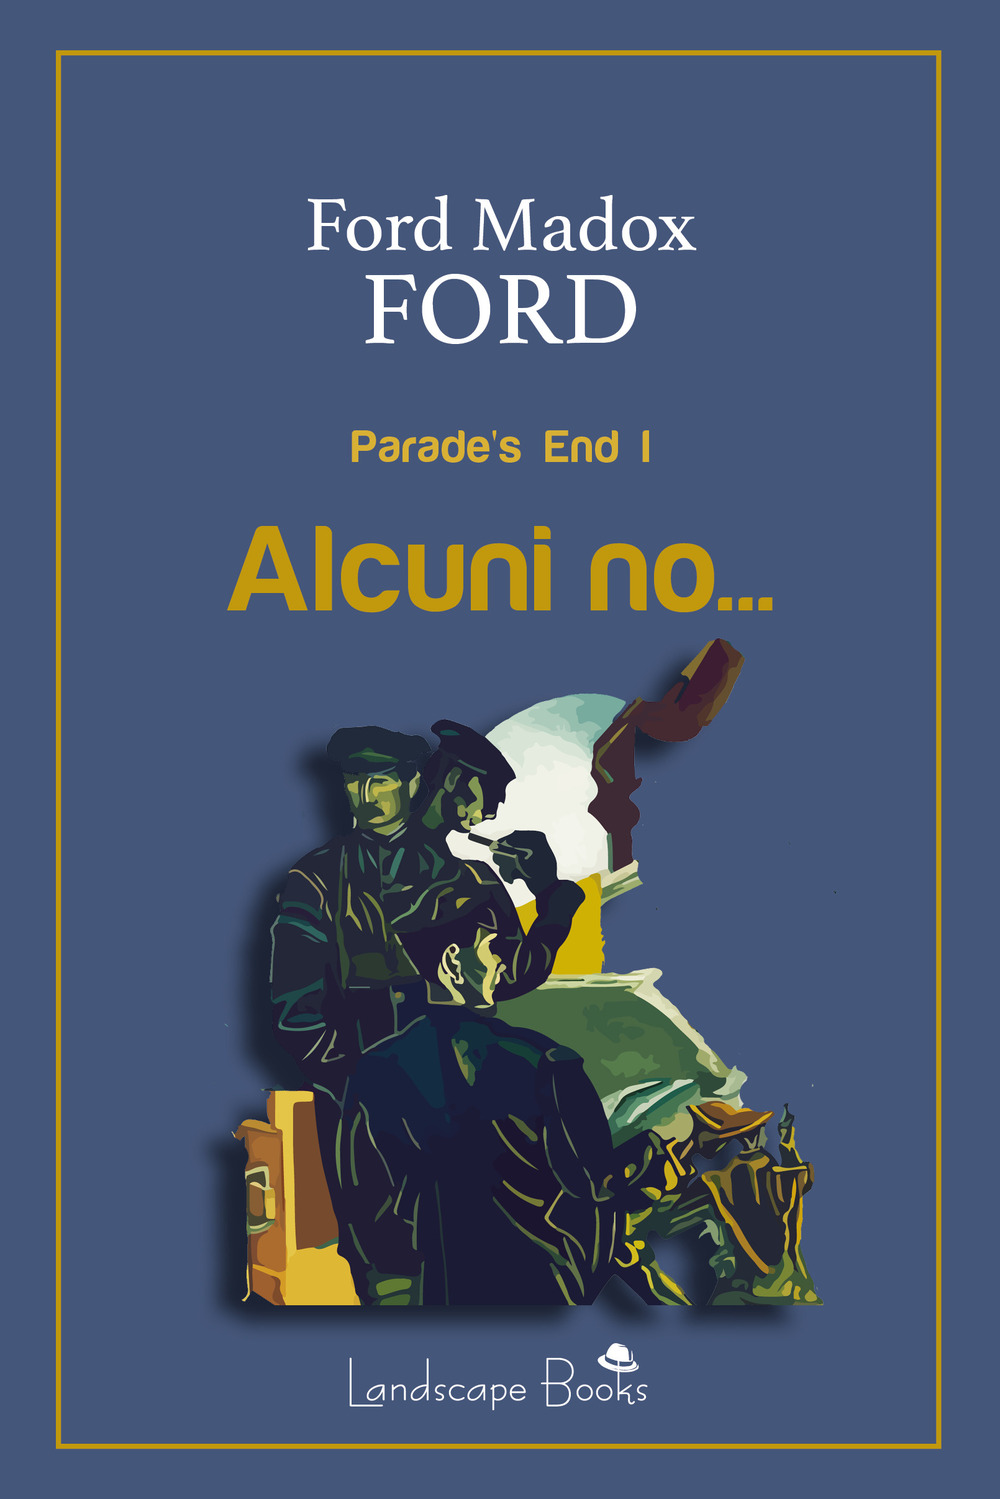 Libri Ford Ford Madox - Alcuni No... Parade's End. Ediz. Integrale Vol 01 NUOVO SIGILLATO, EDIZIONE DEL 20/04/2020 SUBITO DISPONIBILE